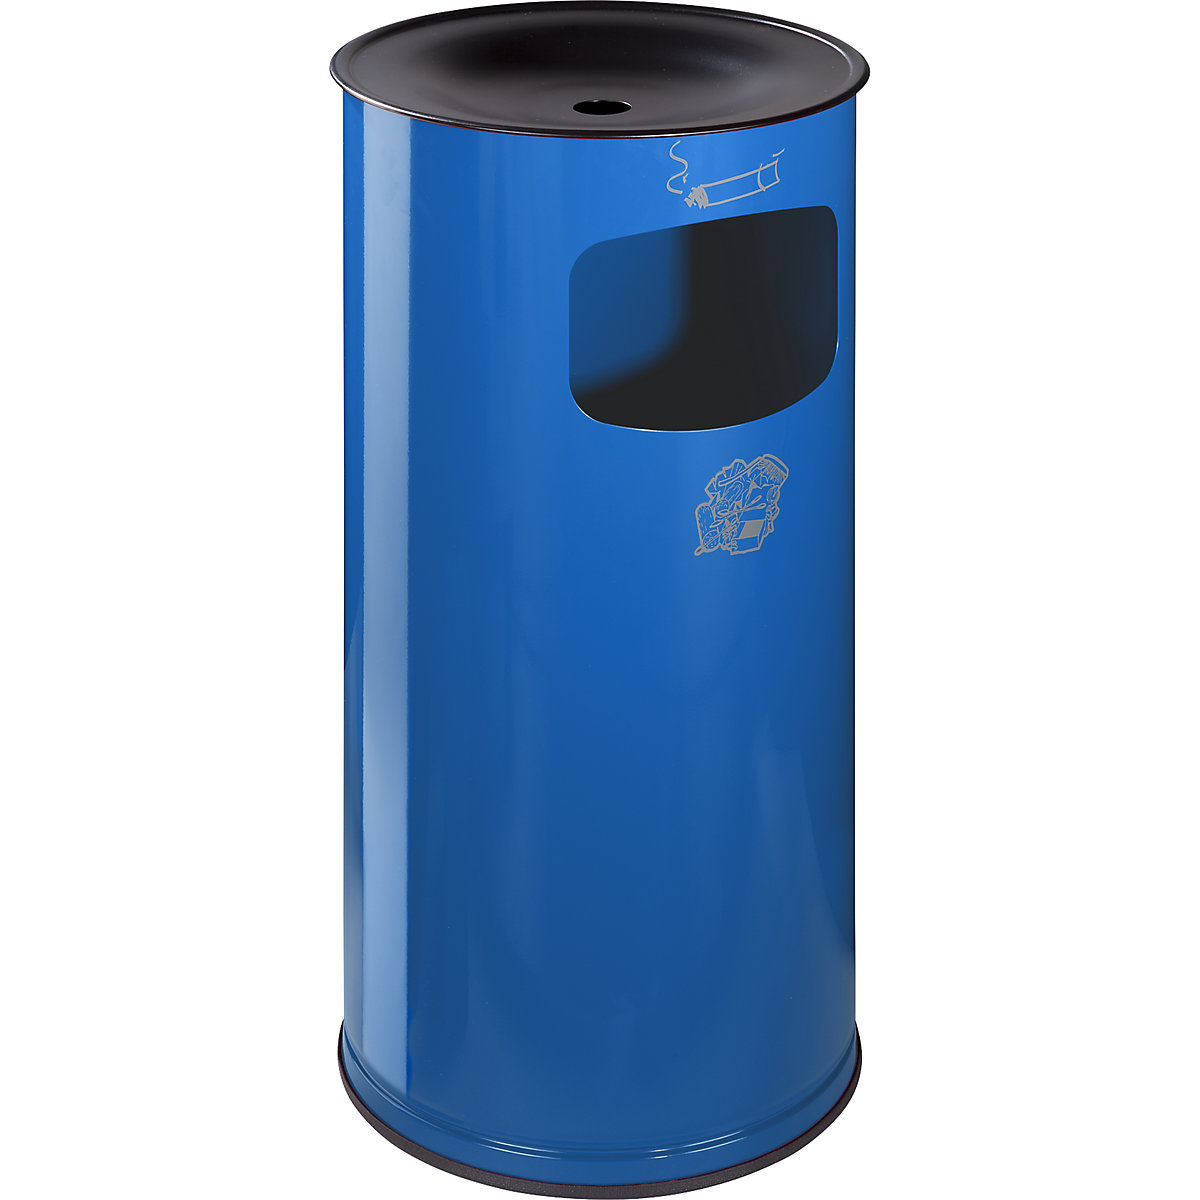 Bezpieczna popielnica z pojemnikiem na odpady – VAR, blacha stalowa, poj. 44 l, wys. x Ø 710 x 355 mm, niebieski gencjanowy-5